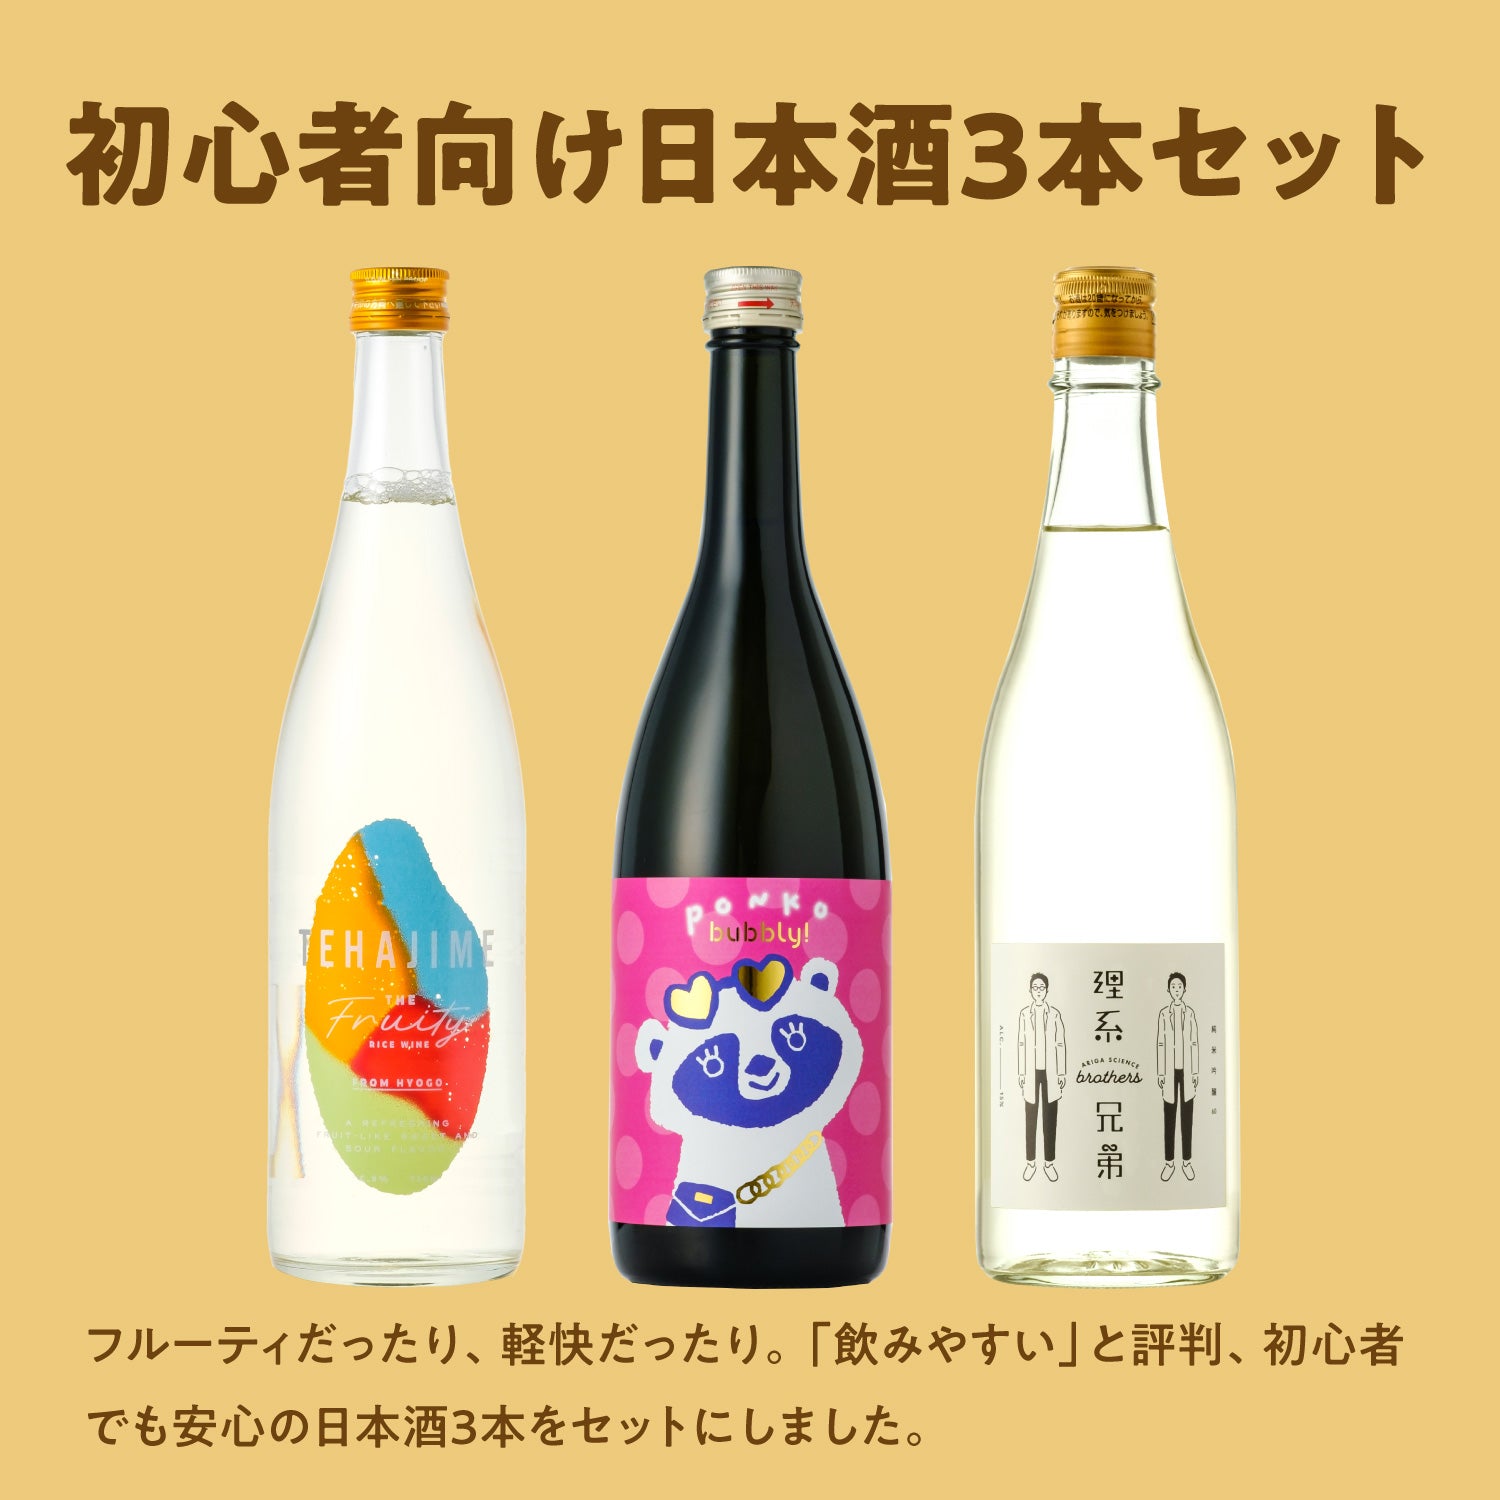 初心者向け日本酒3本セット | のセット | 酒・日本酒の通販ならKURAND ...